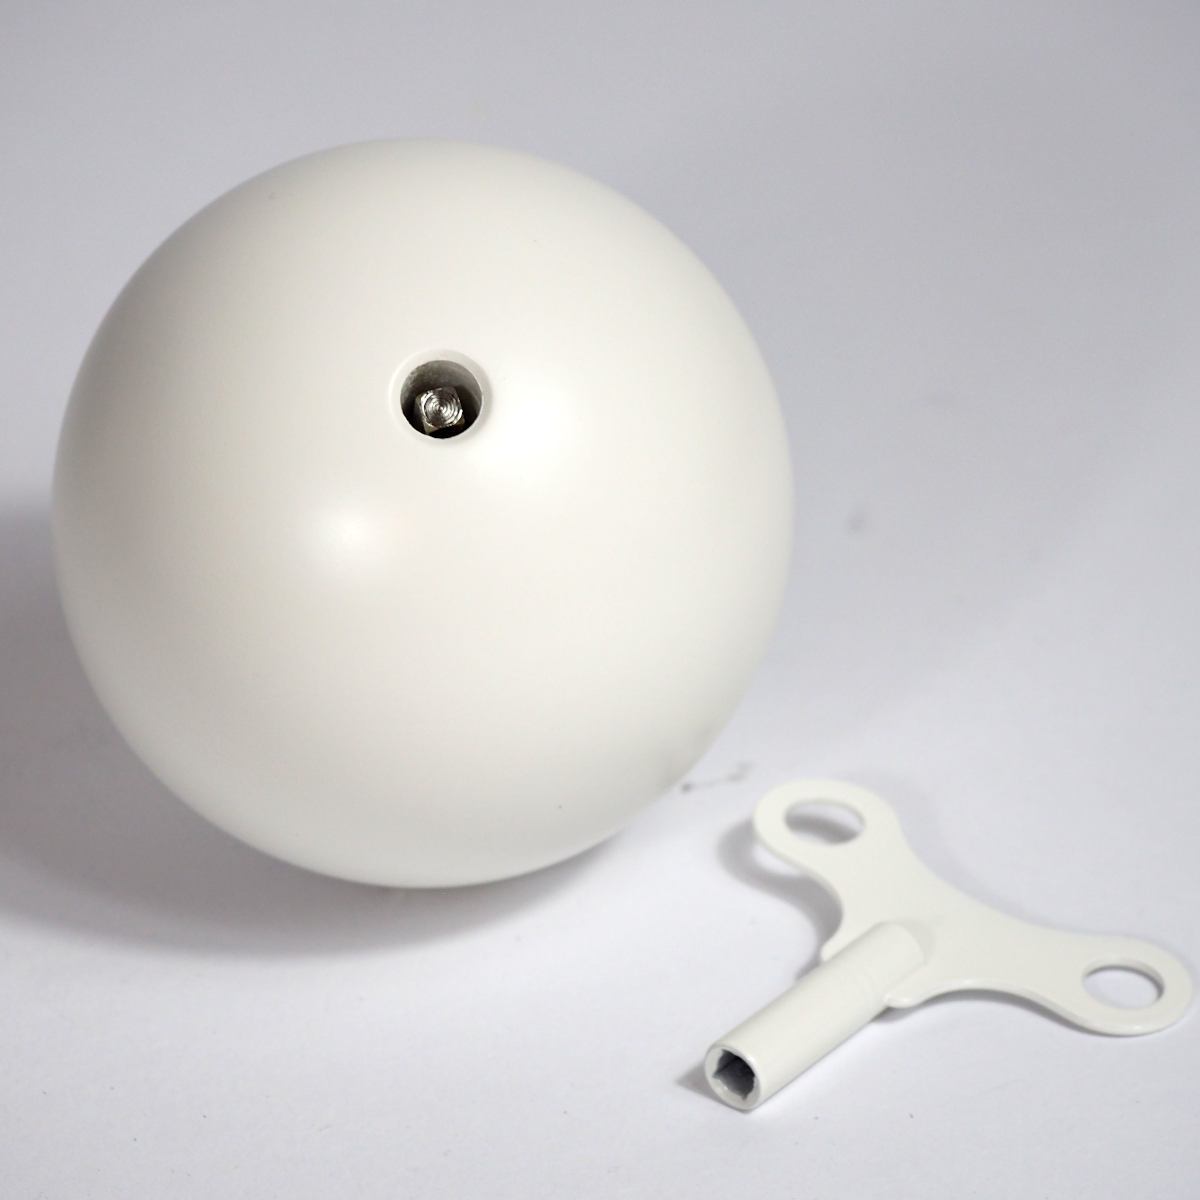 Snowball - weiße Spieluhr aus Holz mit Mozarts Figaro | Kunstbaron